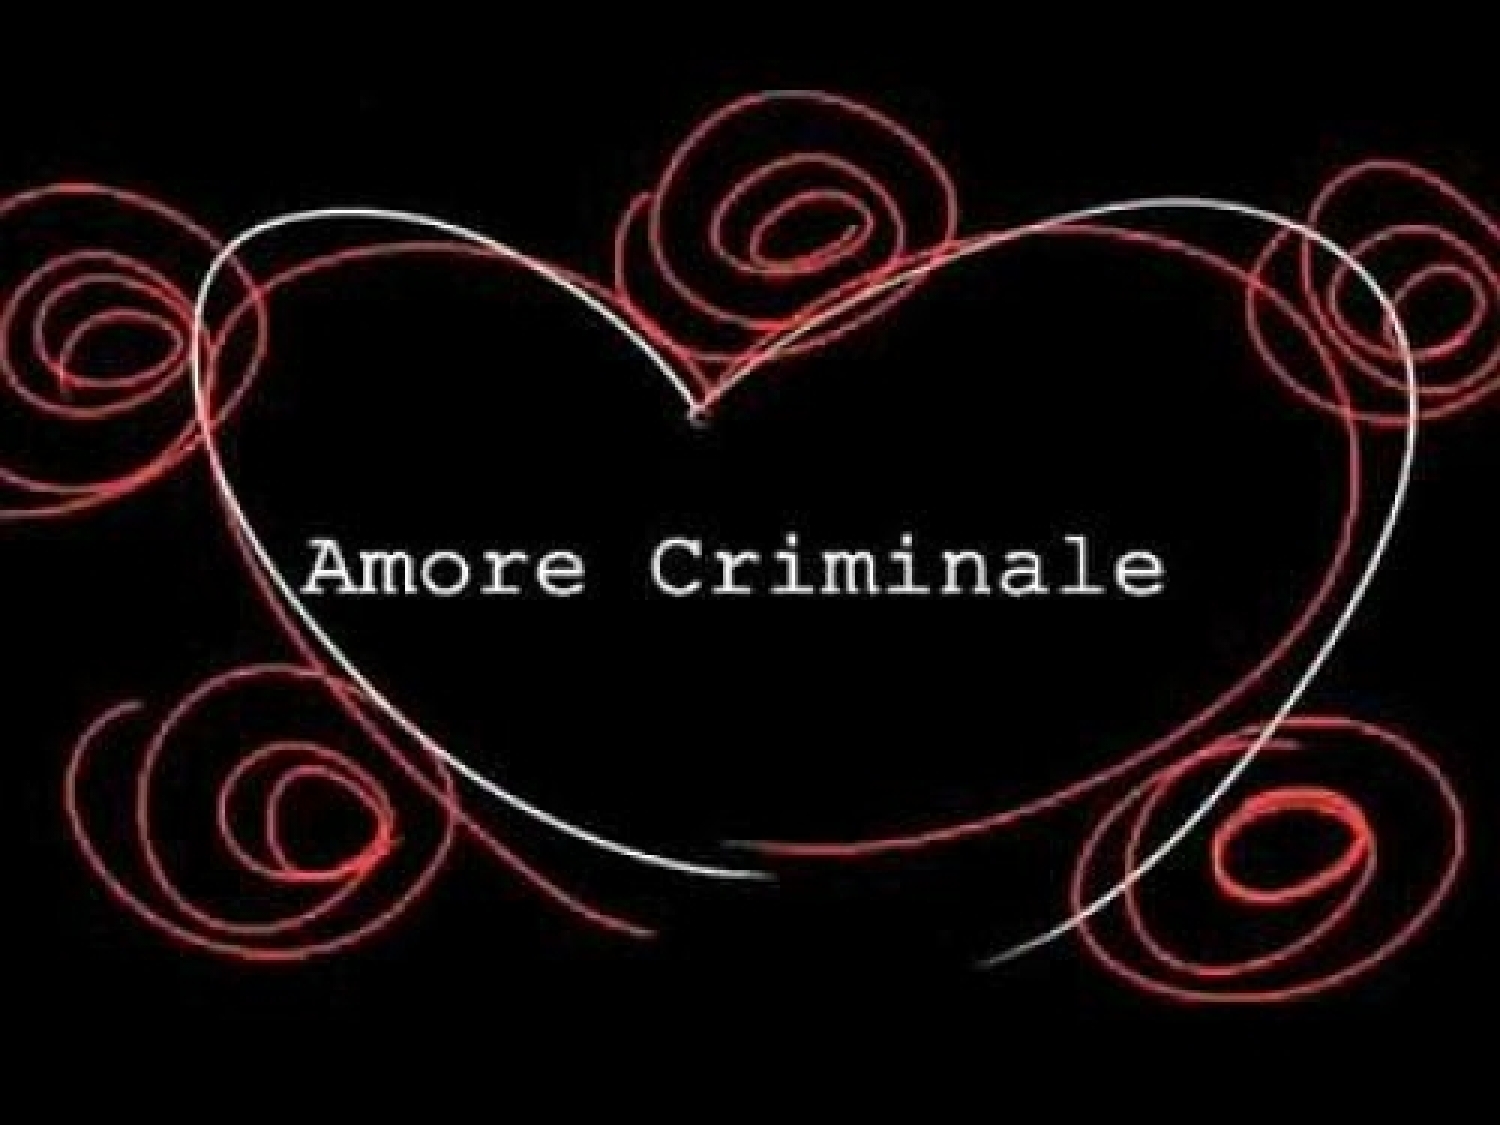 amore_criminale-400x300.jpg